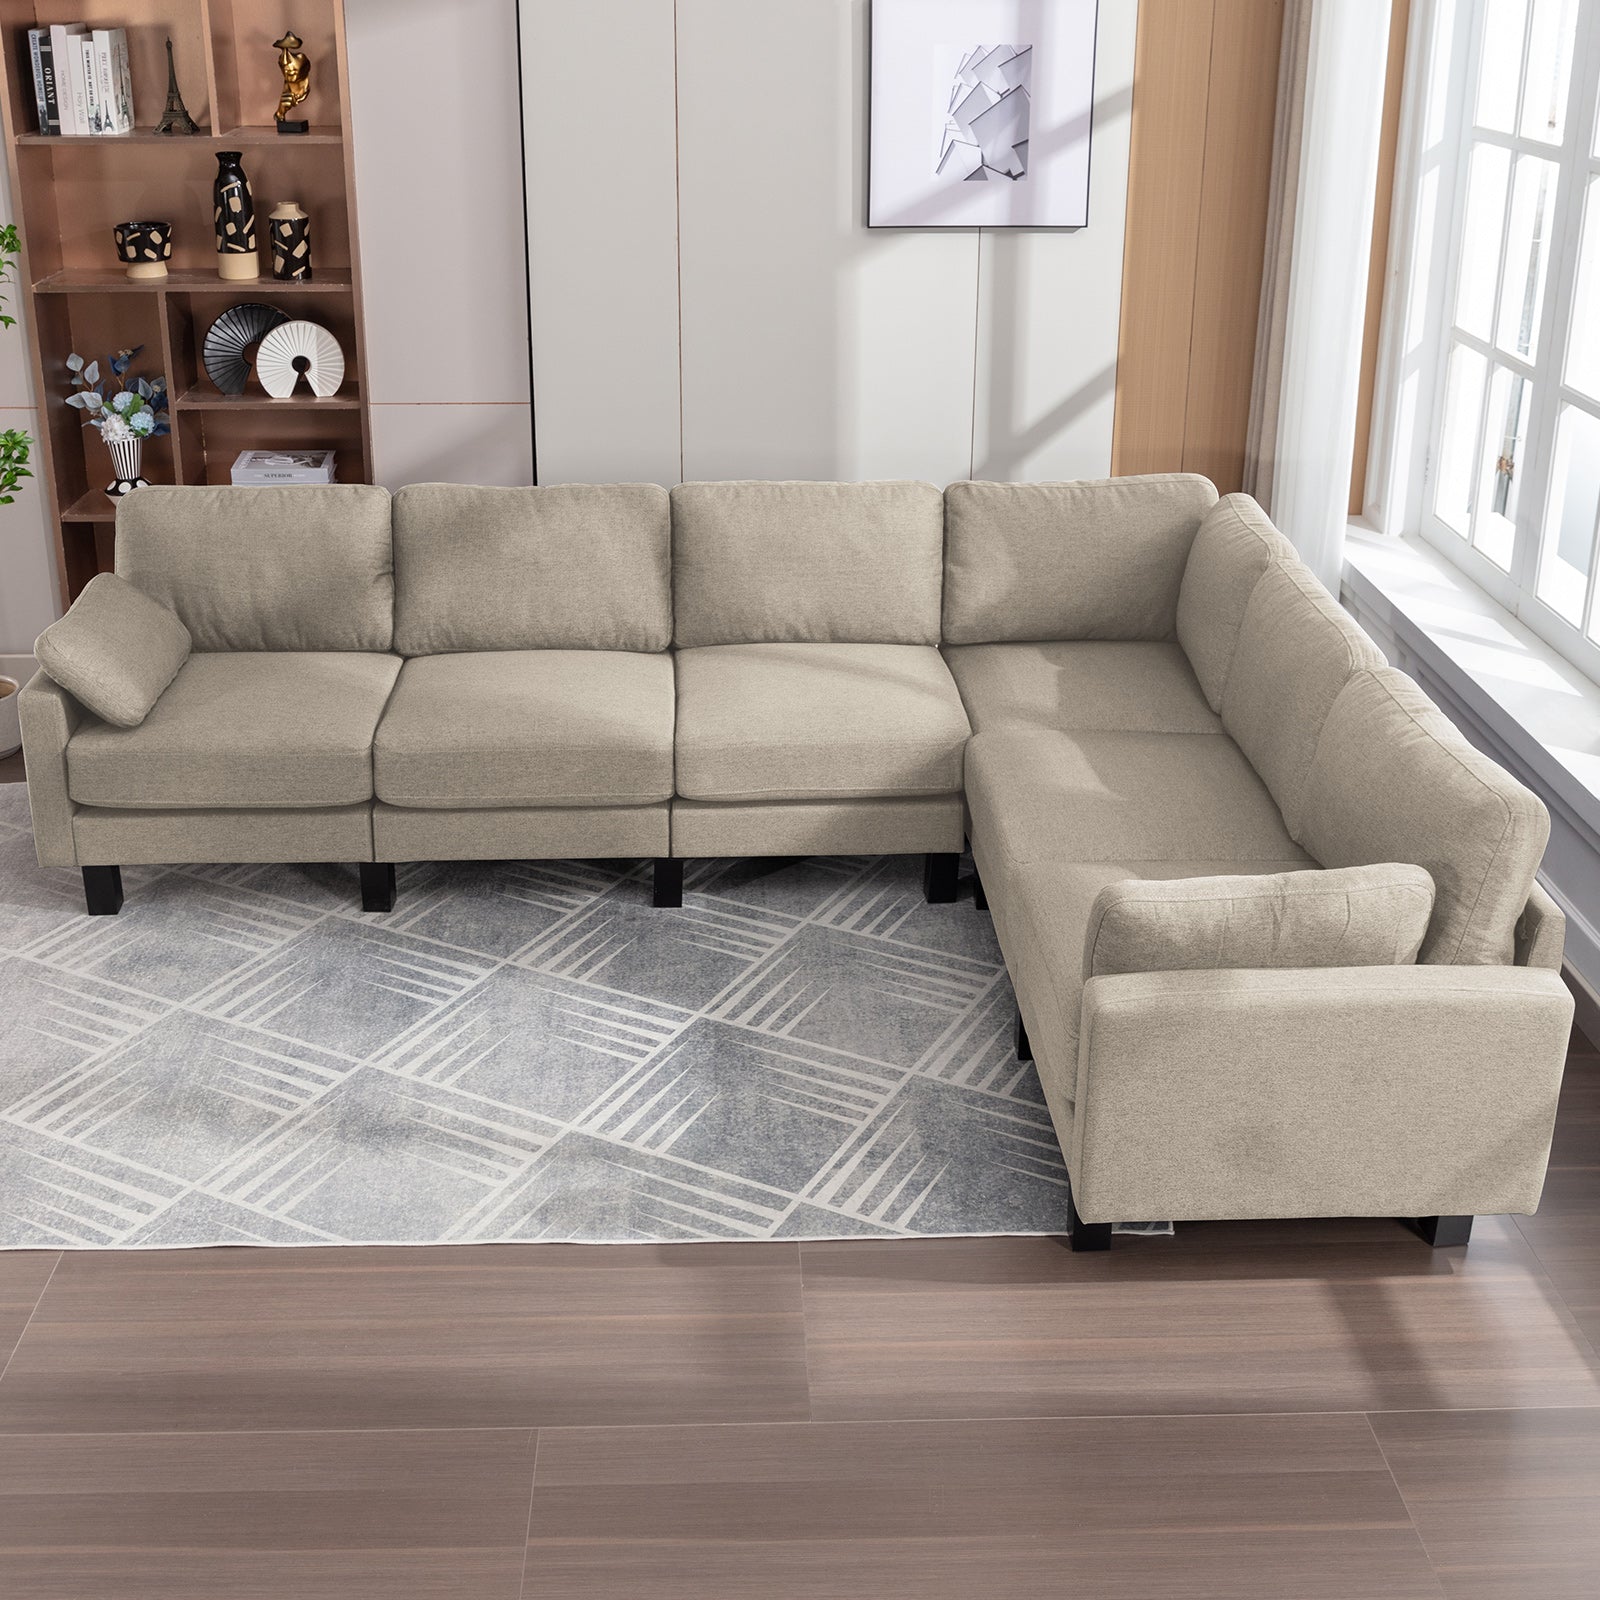 L Shaped Corner Sectional Sofa Set